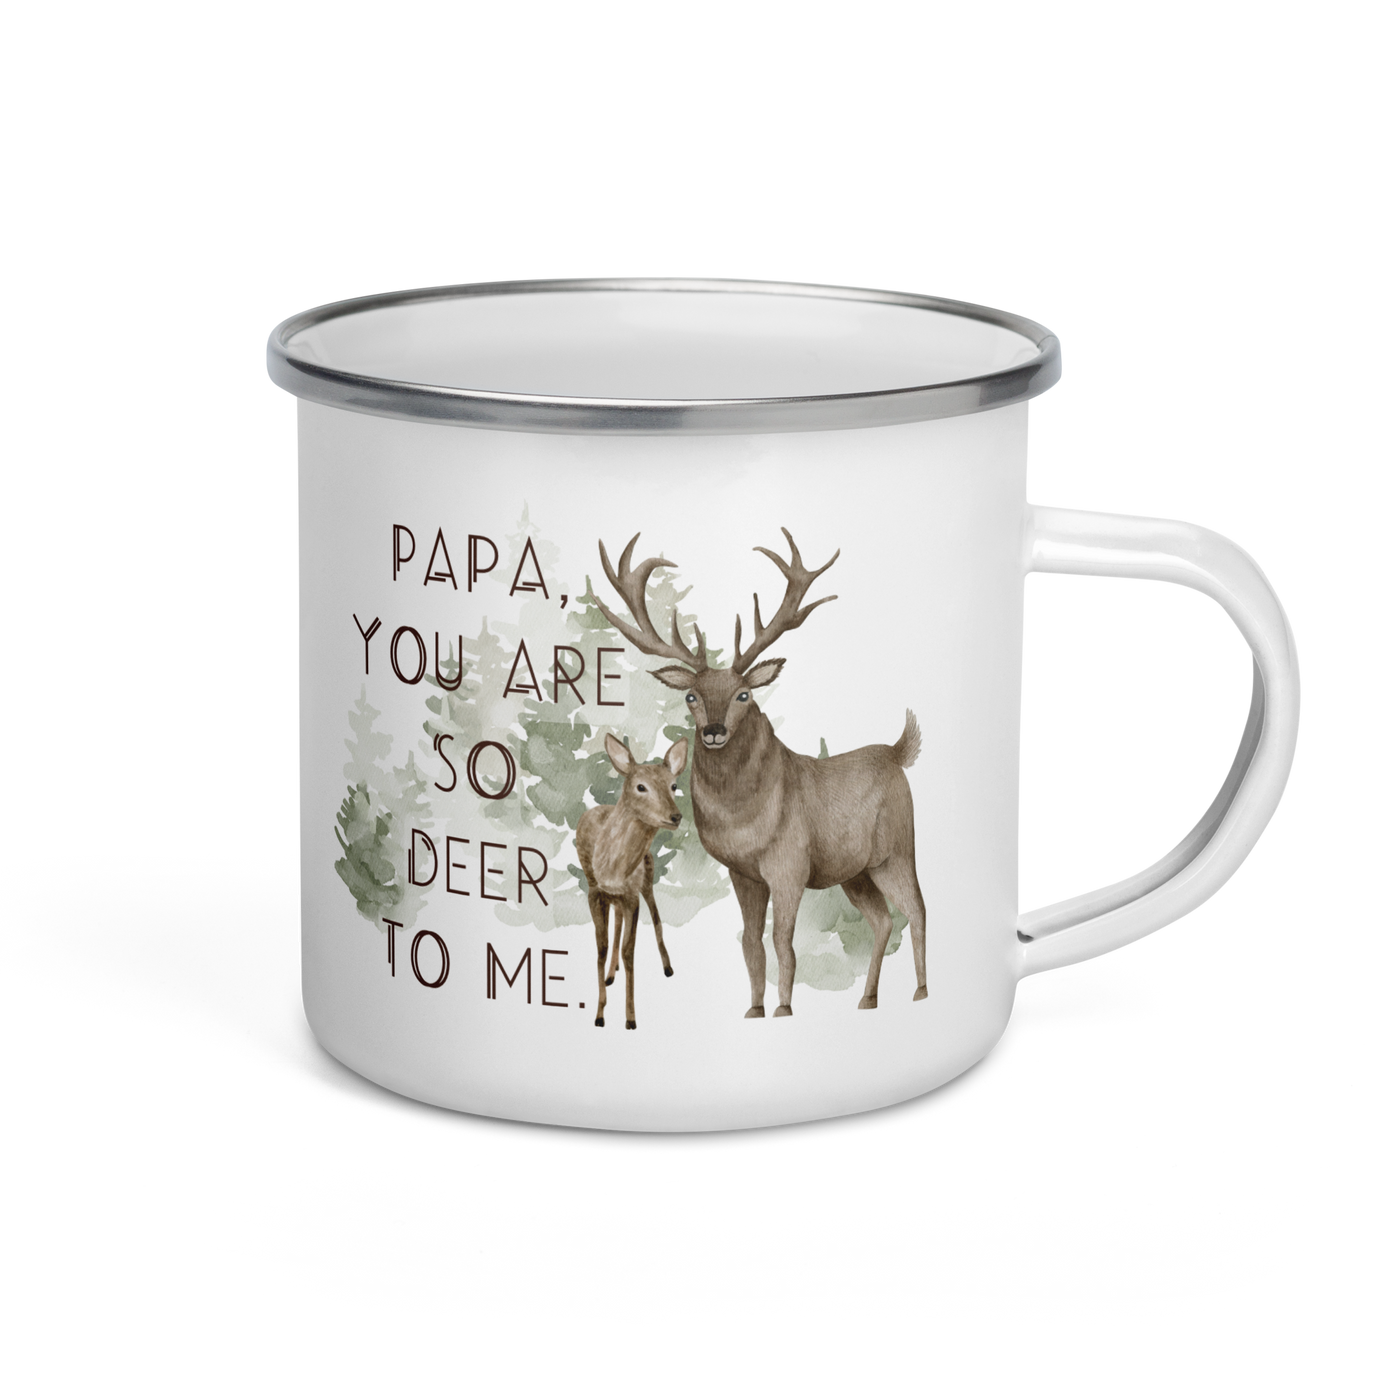 You Are Deer To Me Mug